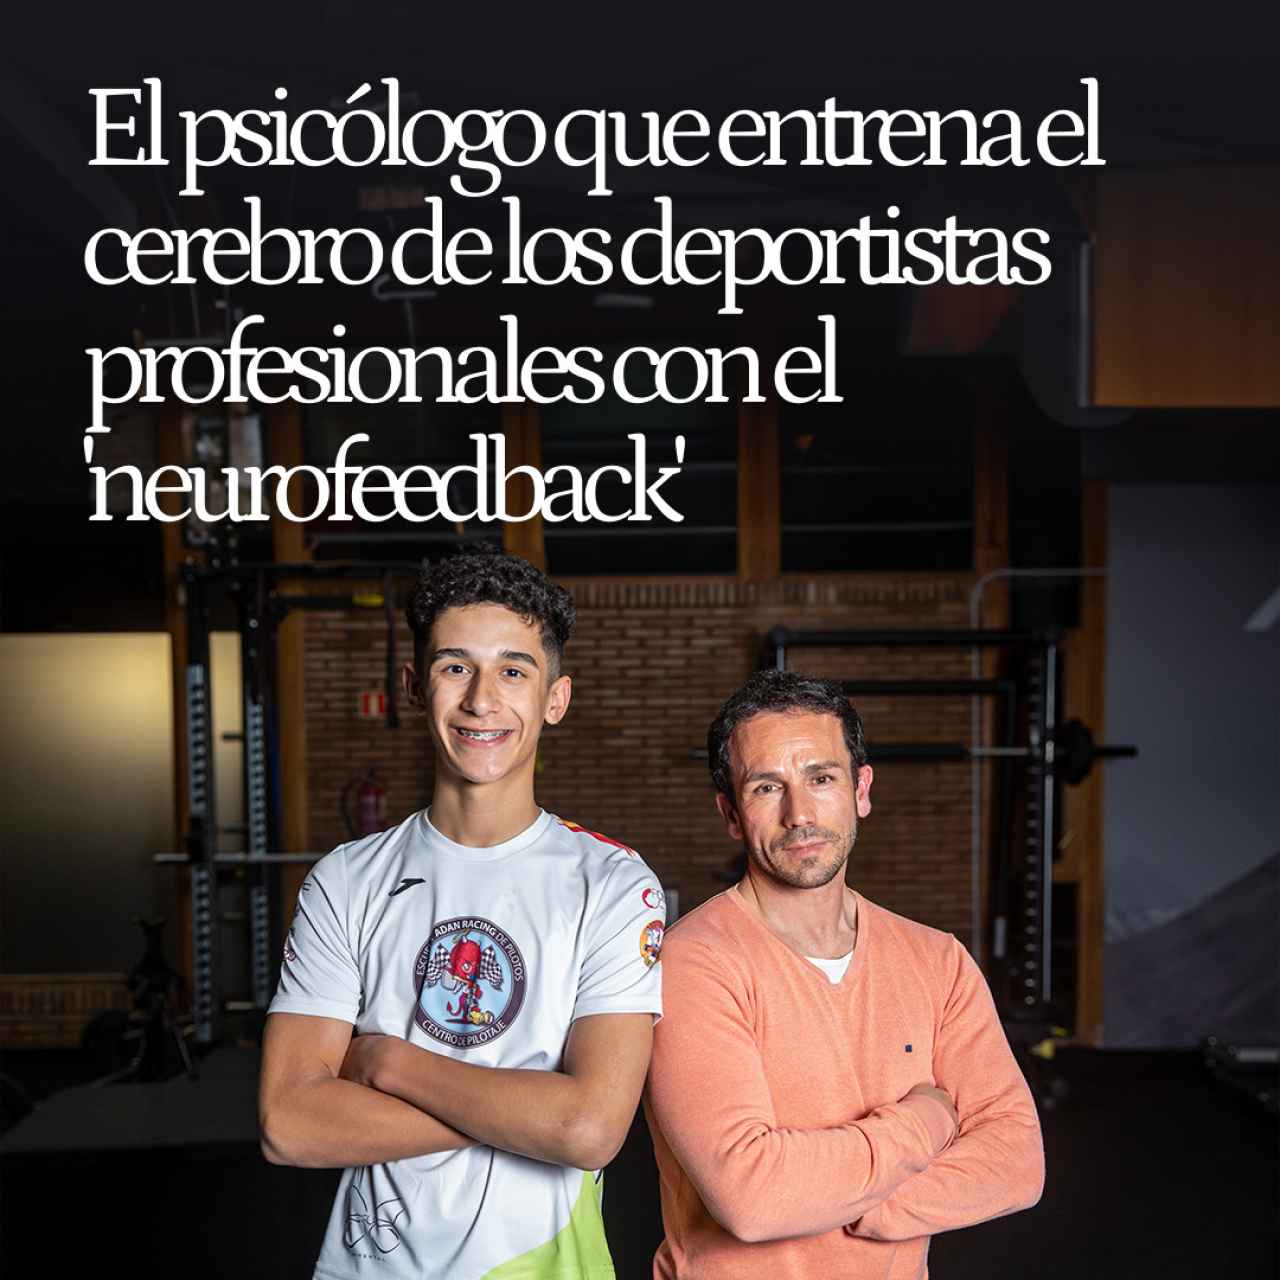 José Adán, el experto que entrena el cerebro de los deportistas profesionales con el revolucionario 'neurofeedback'